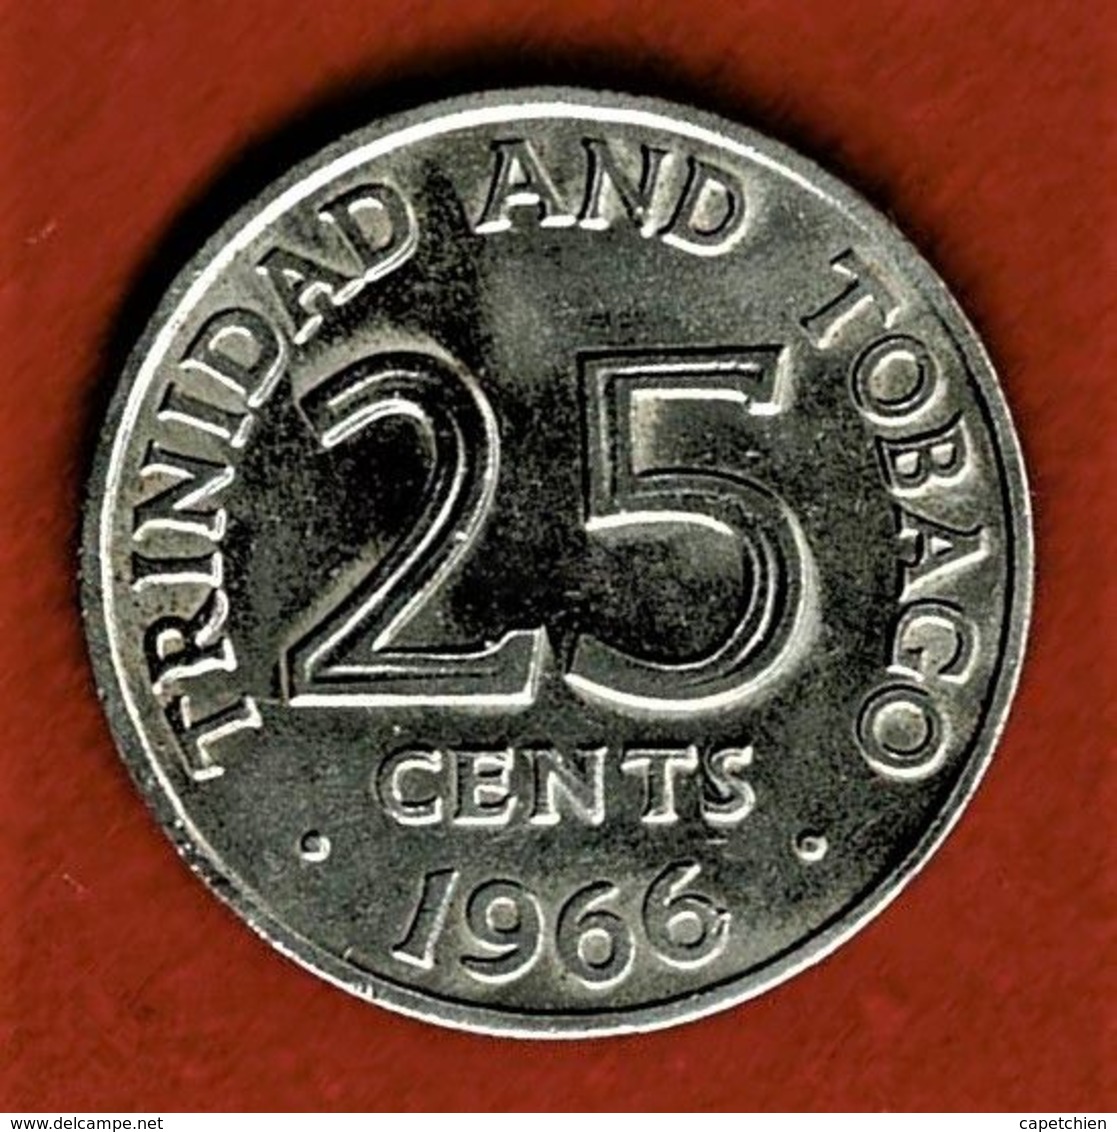 TRINIDAD & TOBAGO / TRINITE & TOBAGO / 25 CENTS / 1966 - Trinidad Y Tobago